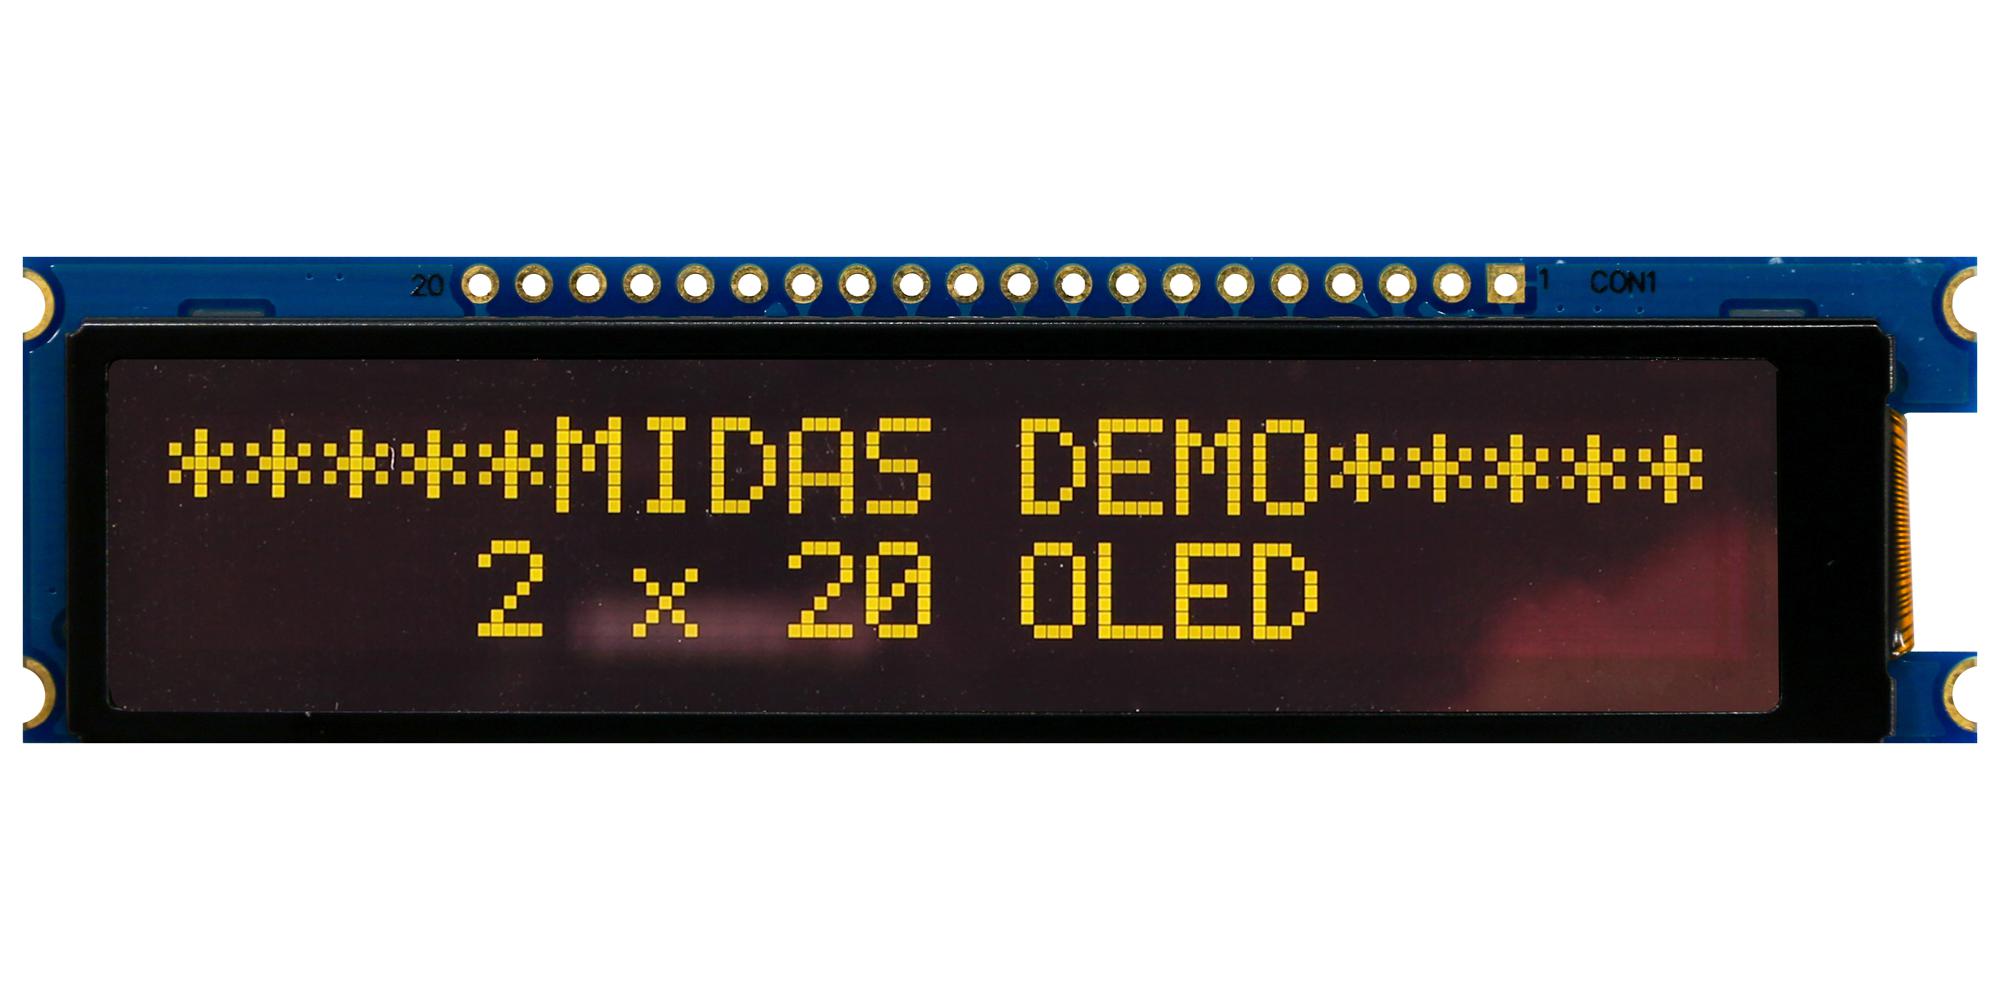 Midas Displays Mdob22005B1V-Eym Oled Display, 20 X 2, Cob, Multi, 3.3V